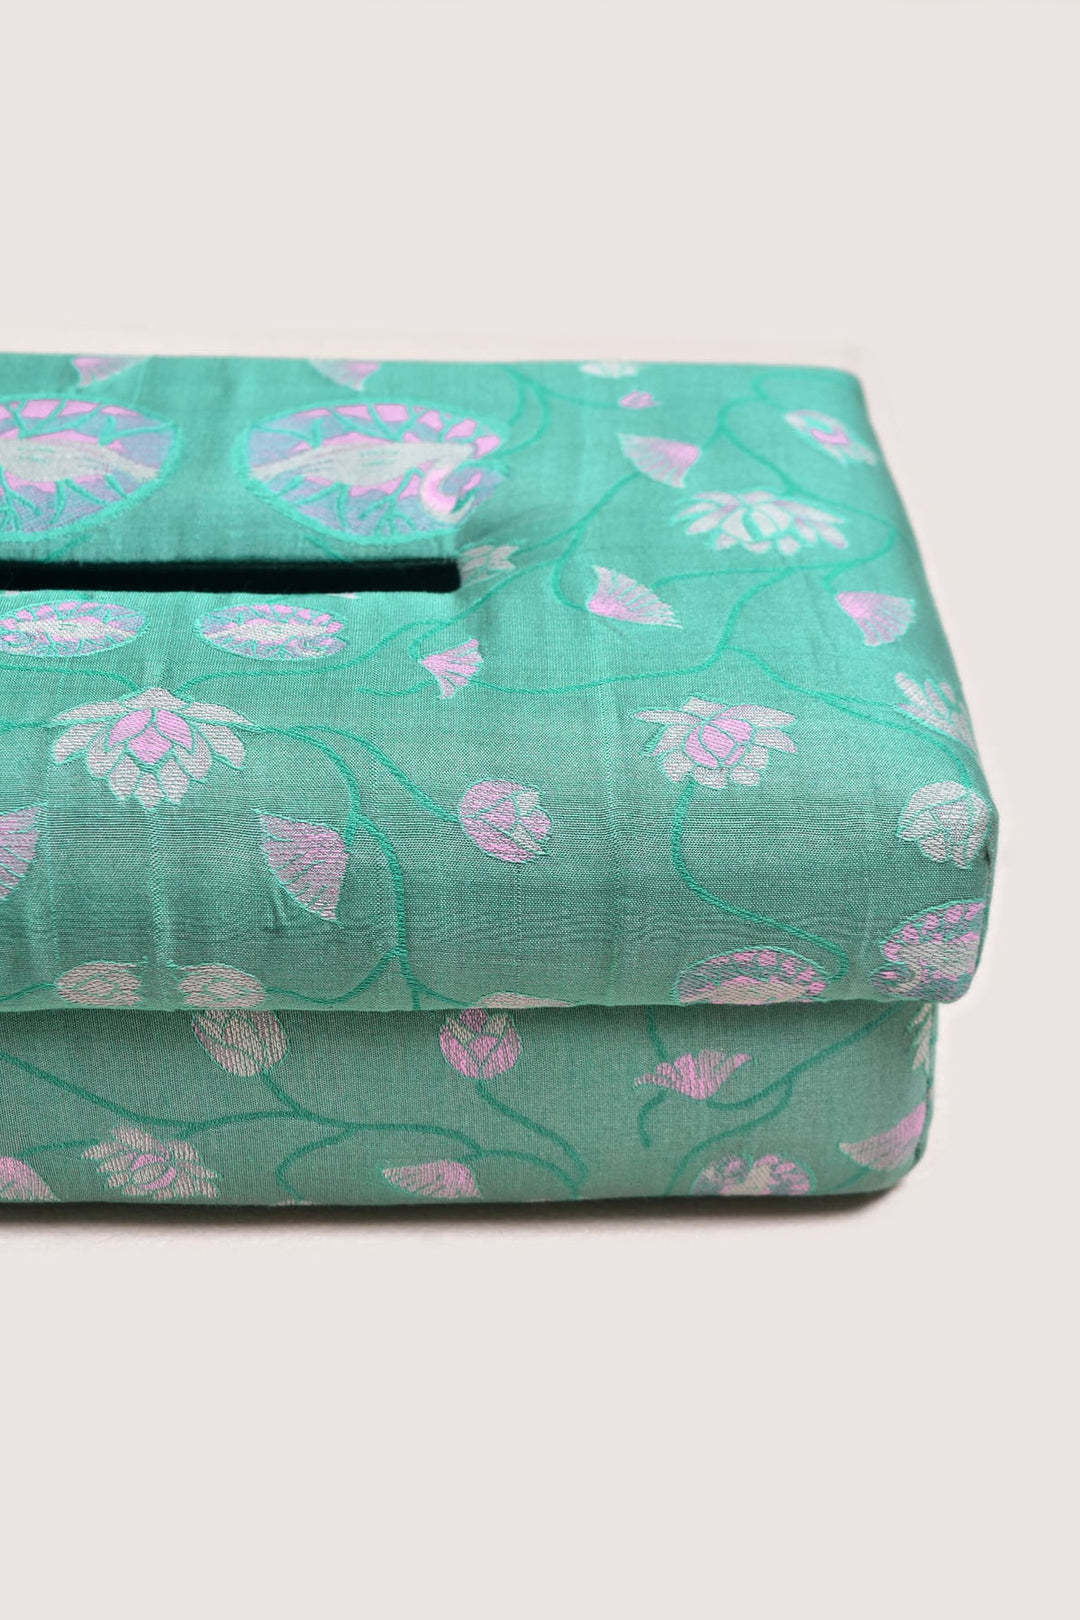 Multicolor Floral Silk and Cotton Tissue Box | Calyx Handmade Tissue Box - Multi Color